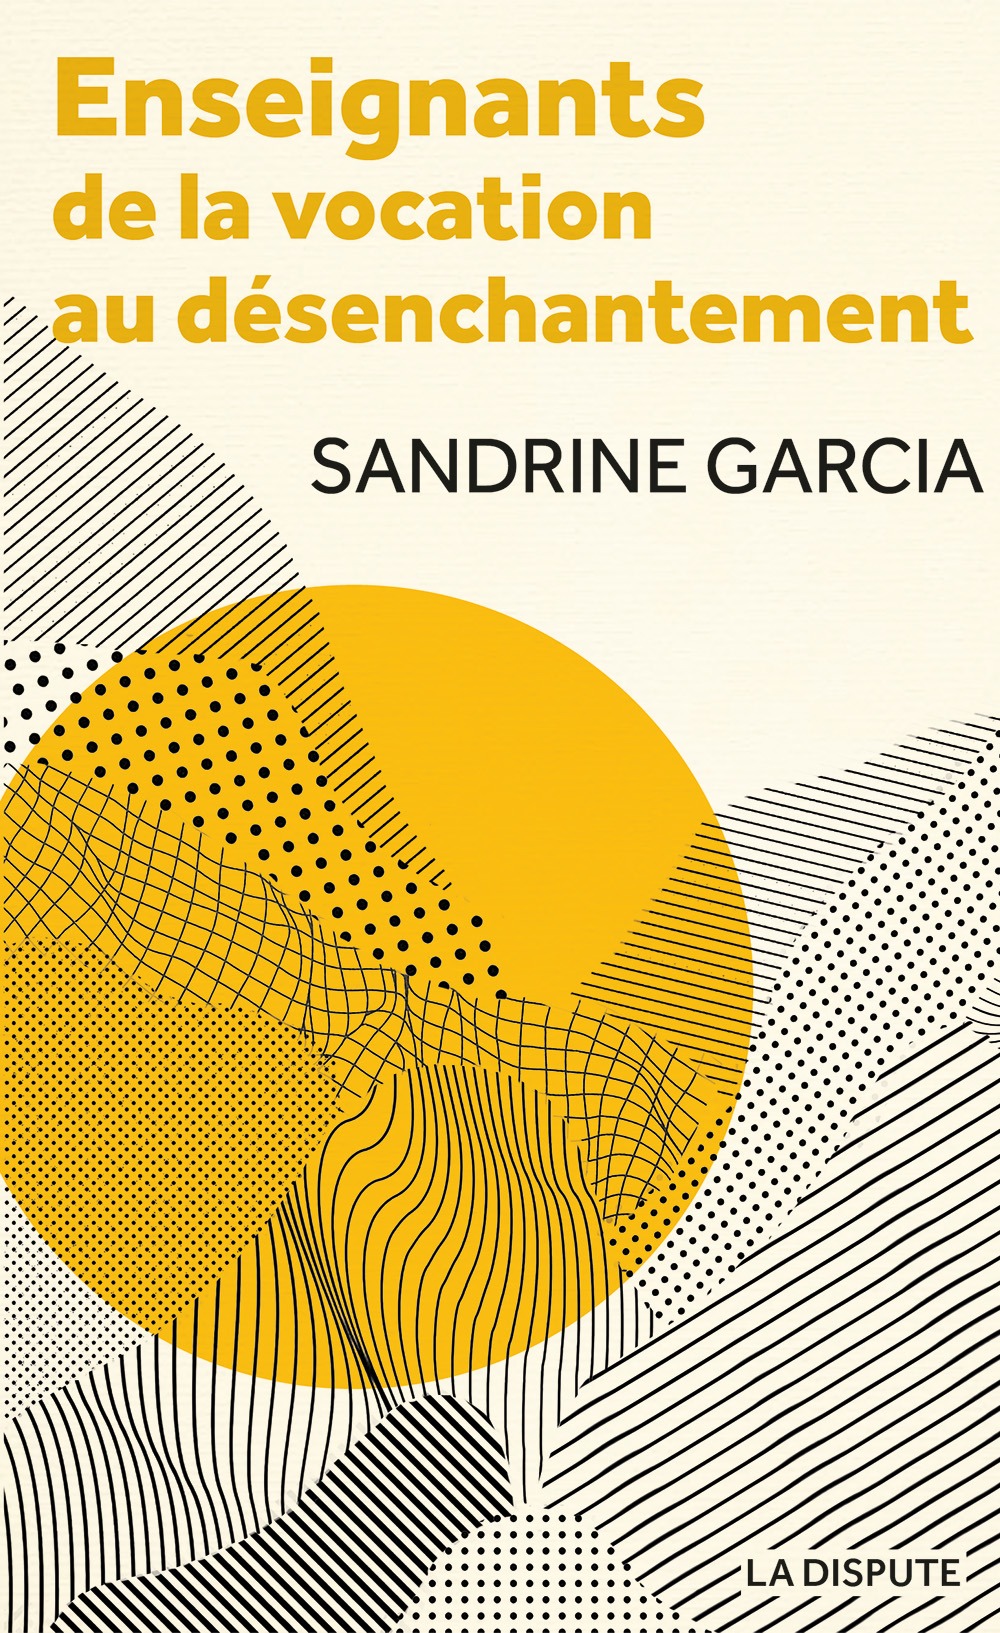 Couverture : Sandrine Garcia, Enseignants. De la vocation au désenchantement.